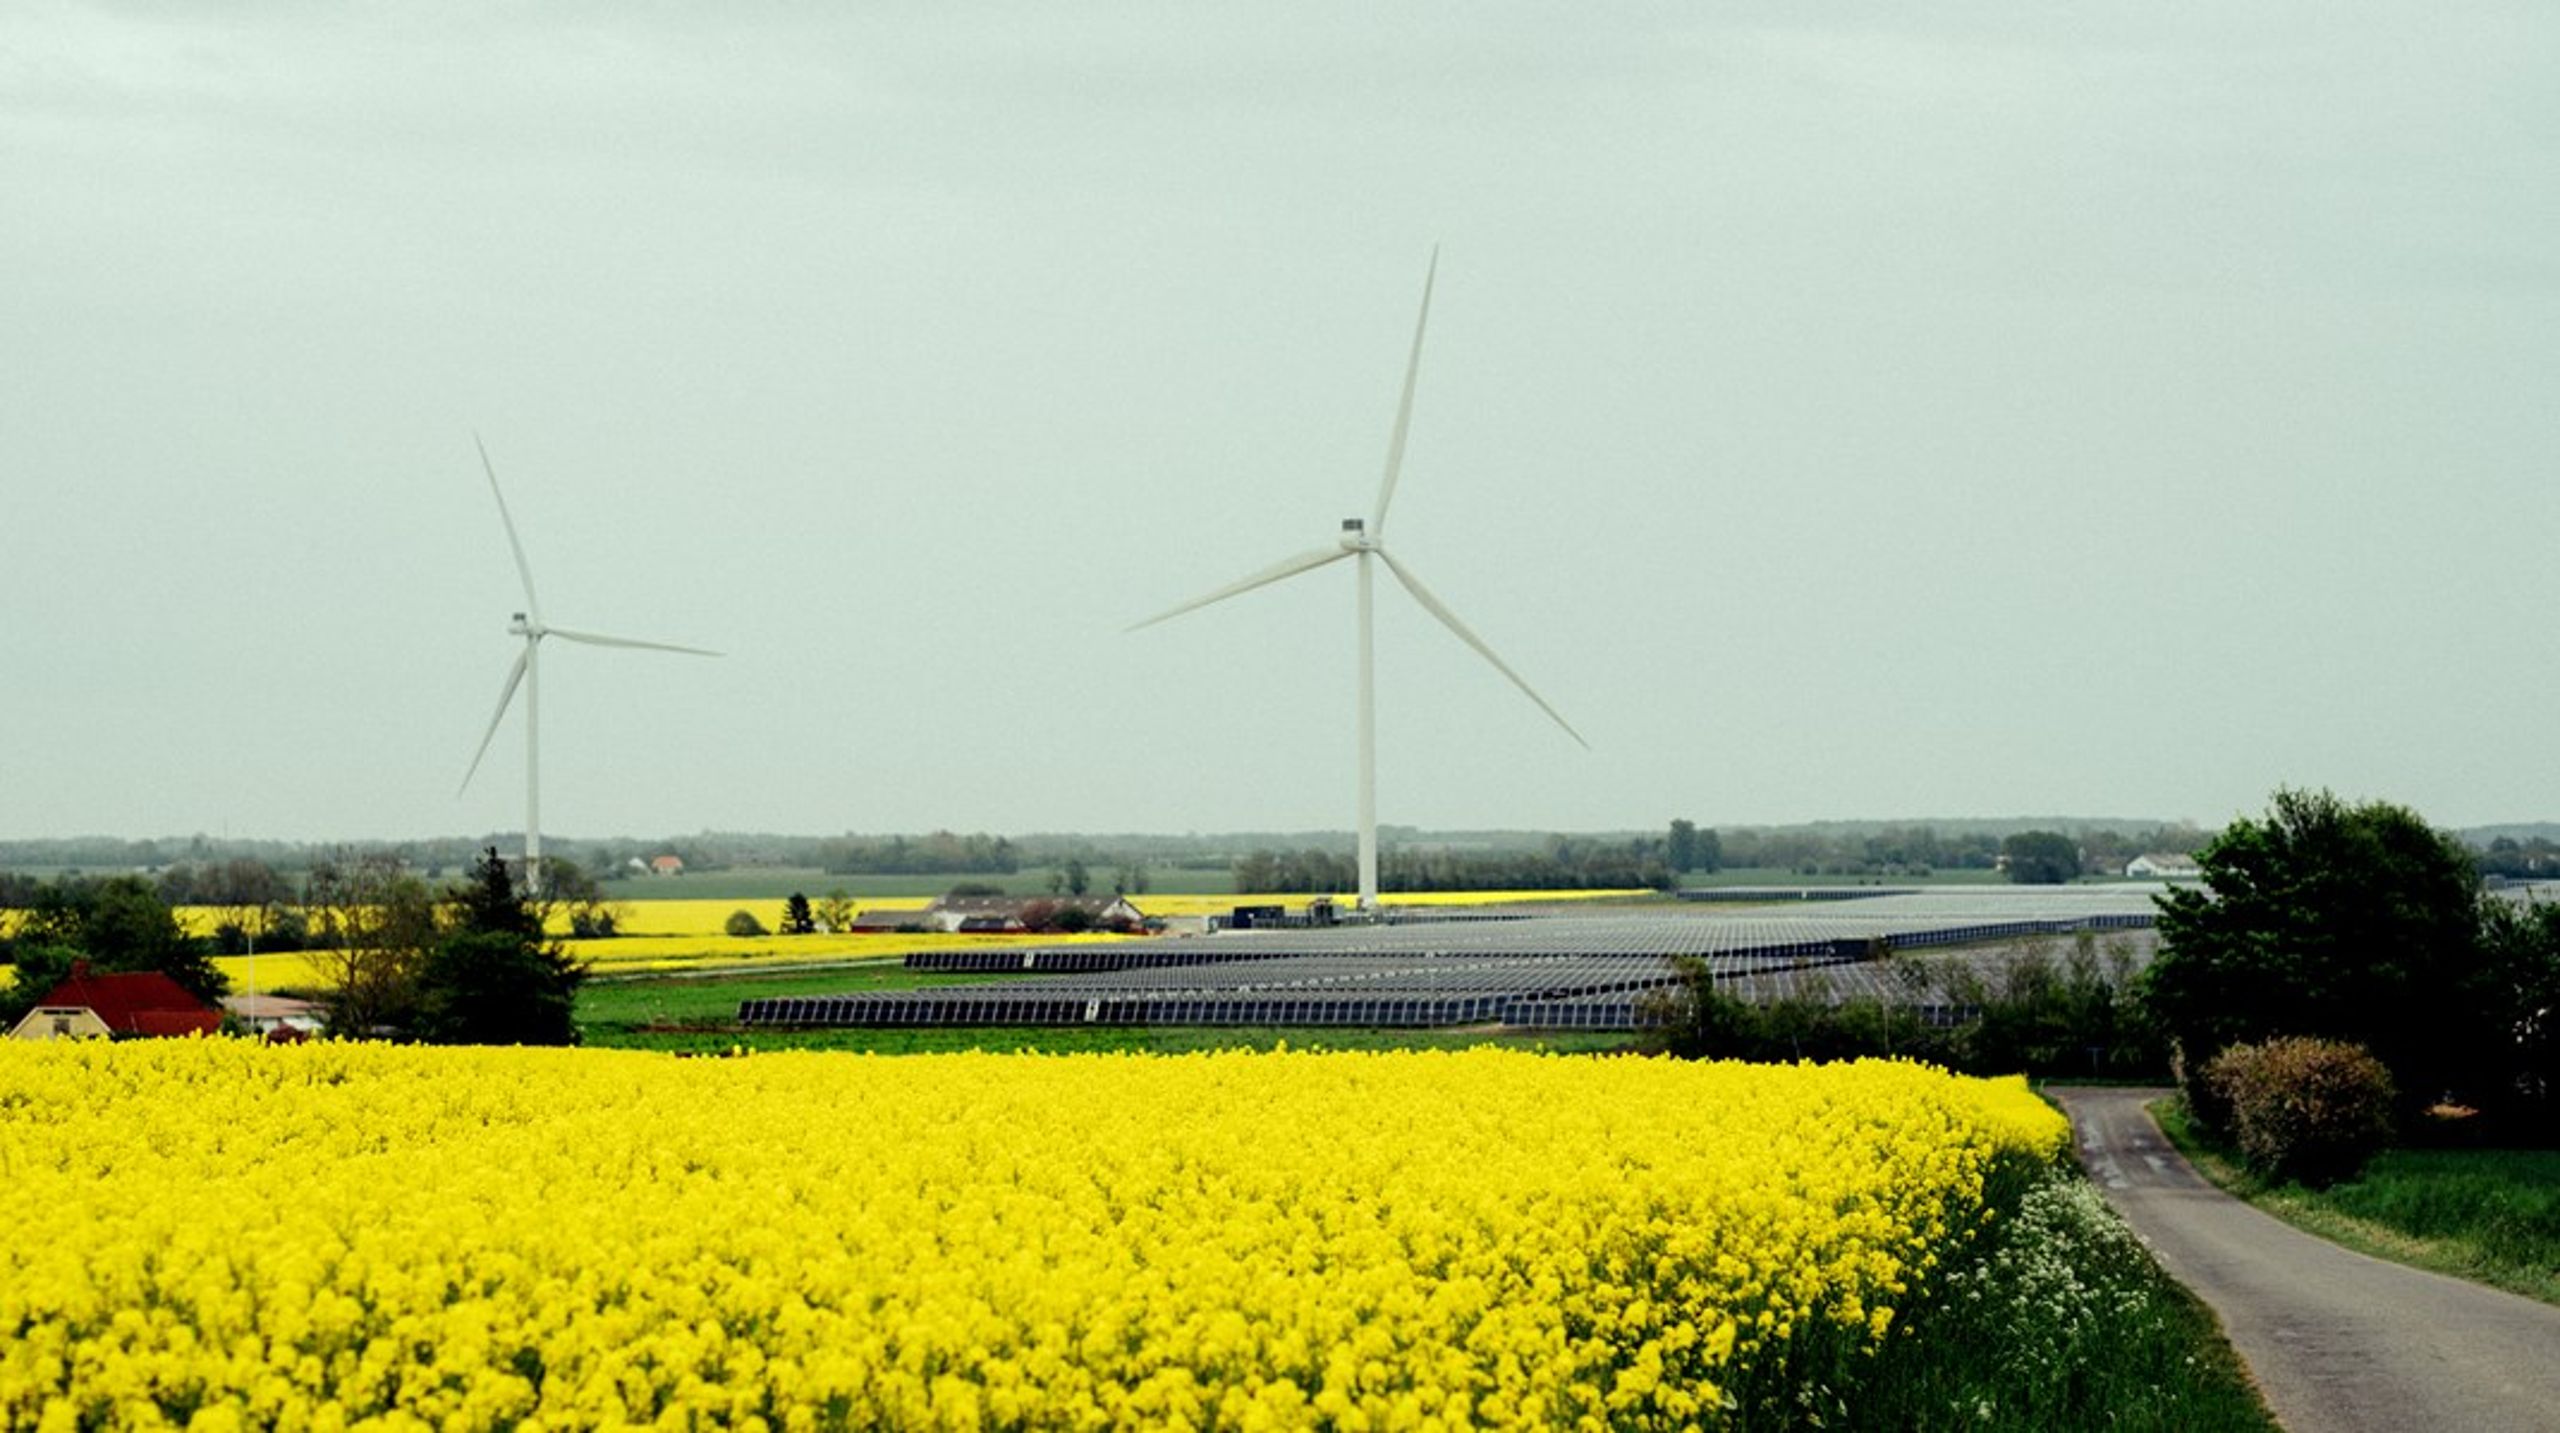 Danmarks største vindmølleopstillere, Eurowind Energy, har kun prøvet at have to projekter, hvor der ikke var klager fra lokalområdet, og et af de projekter var i Veddum Kær ved Mariager.